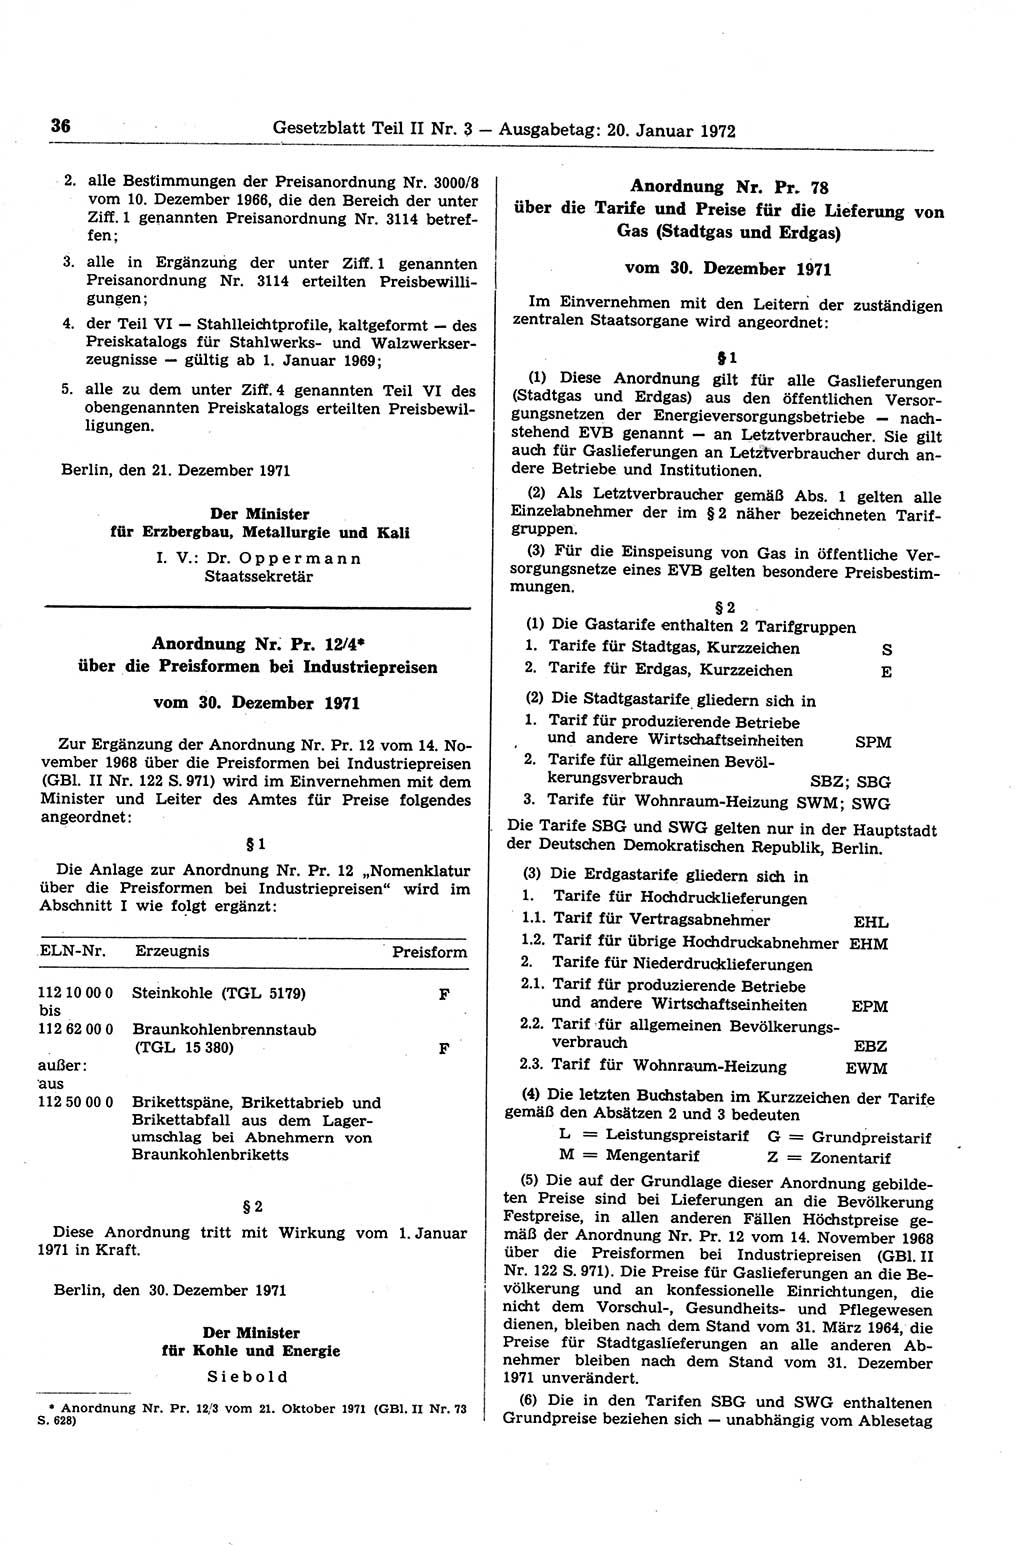 Gesetzblatt (GBl.) der Deutschen Demokratischen Republik (DDR) Teil ⅠⅠ 1972, Seite 36 (GBl. DDR ⅠⅠ 1972, S. 36)